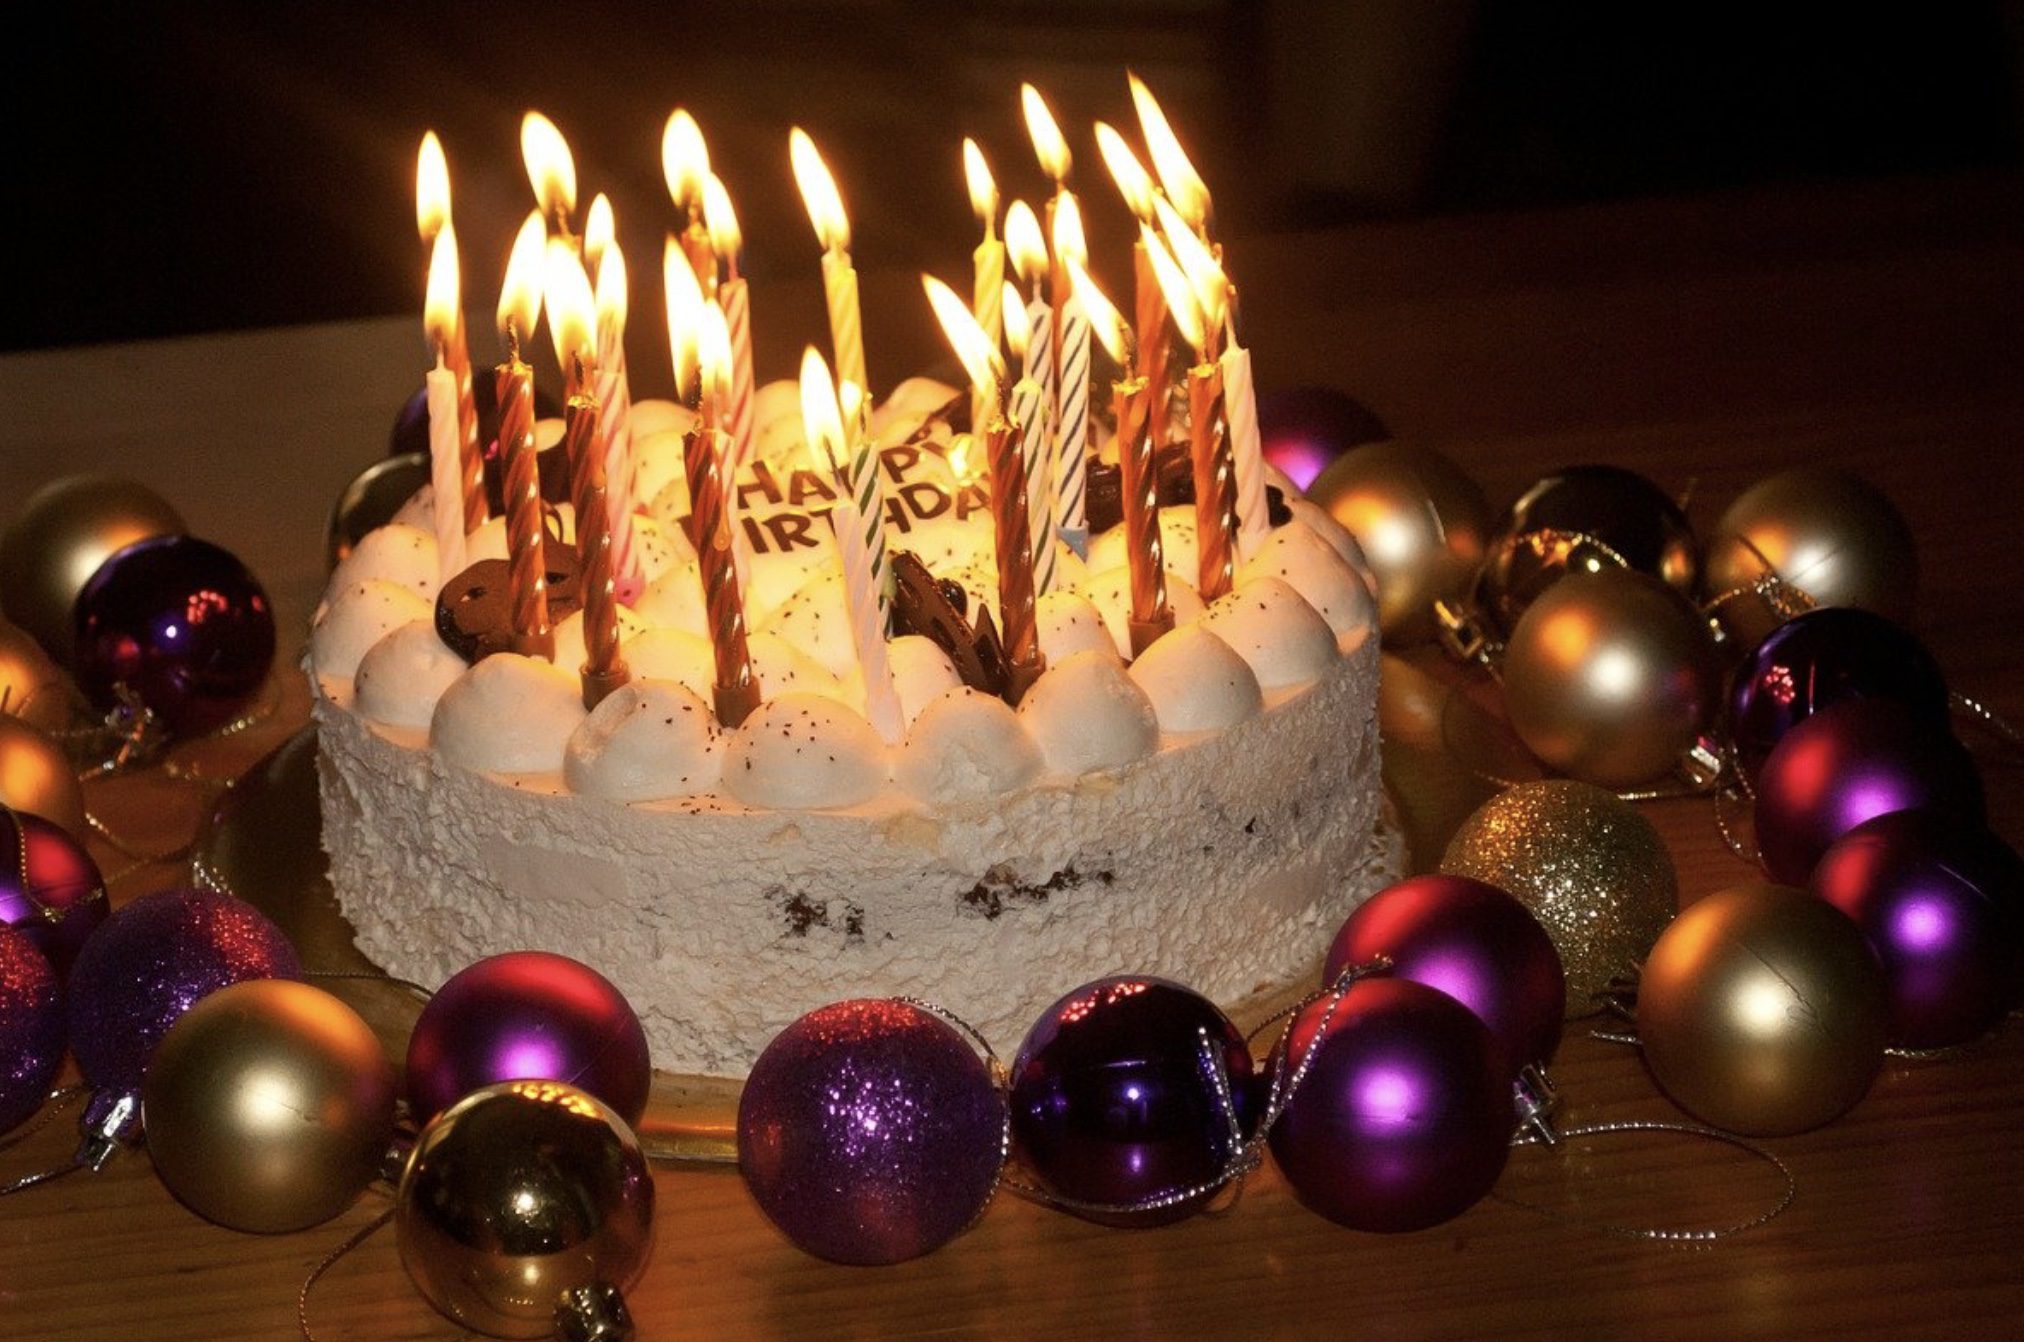 Comment décorer son gâteau pour un anniversaire ?